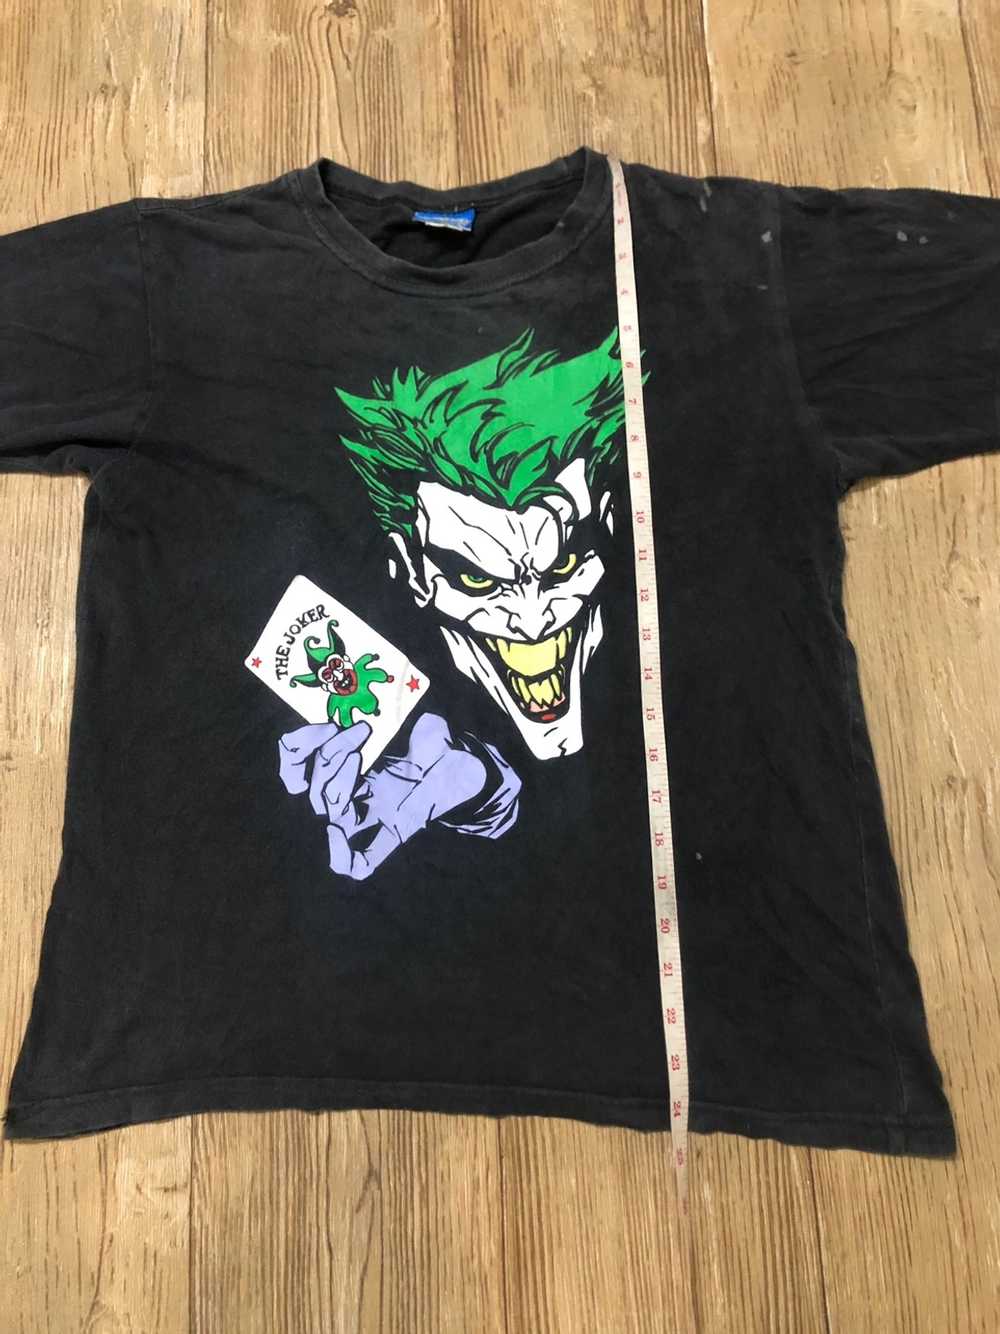 Movie × Vintage × Warner Bros Vintage Joker T shirt S… - Gem